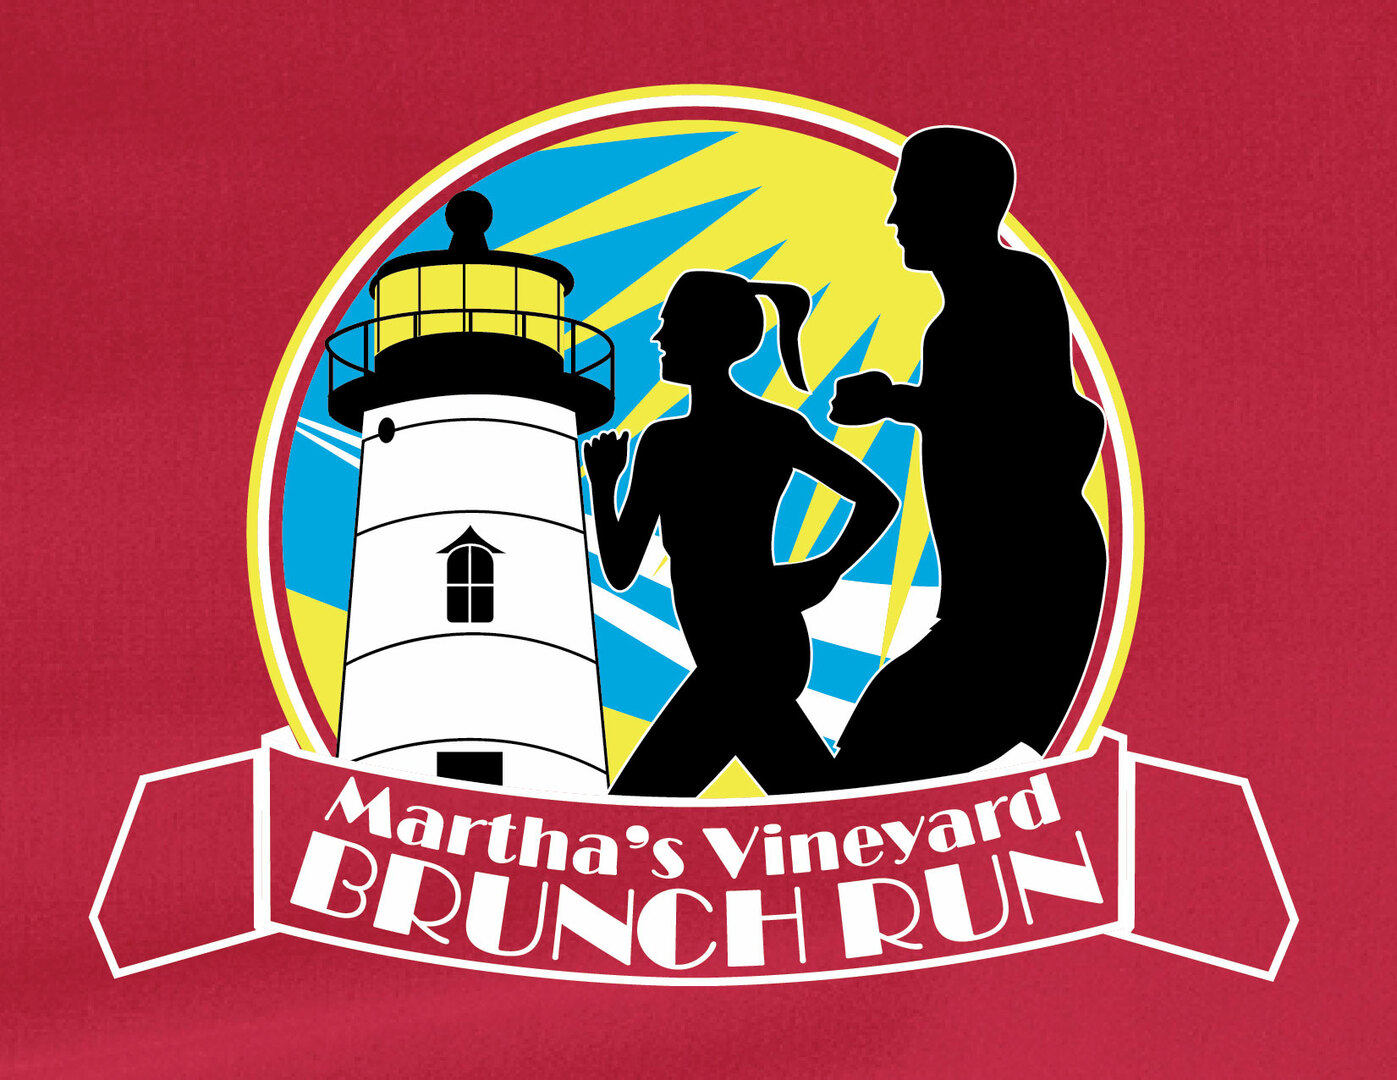 Martha's Vineyard Brunch Run/Walk, Edgartown, Massachusetts, United States